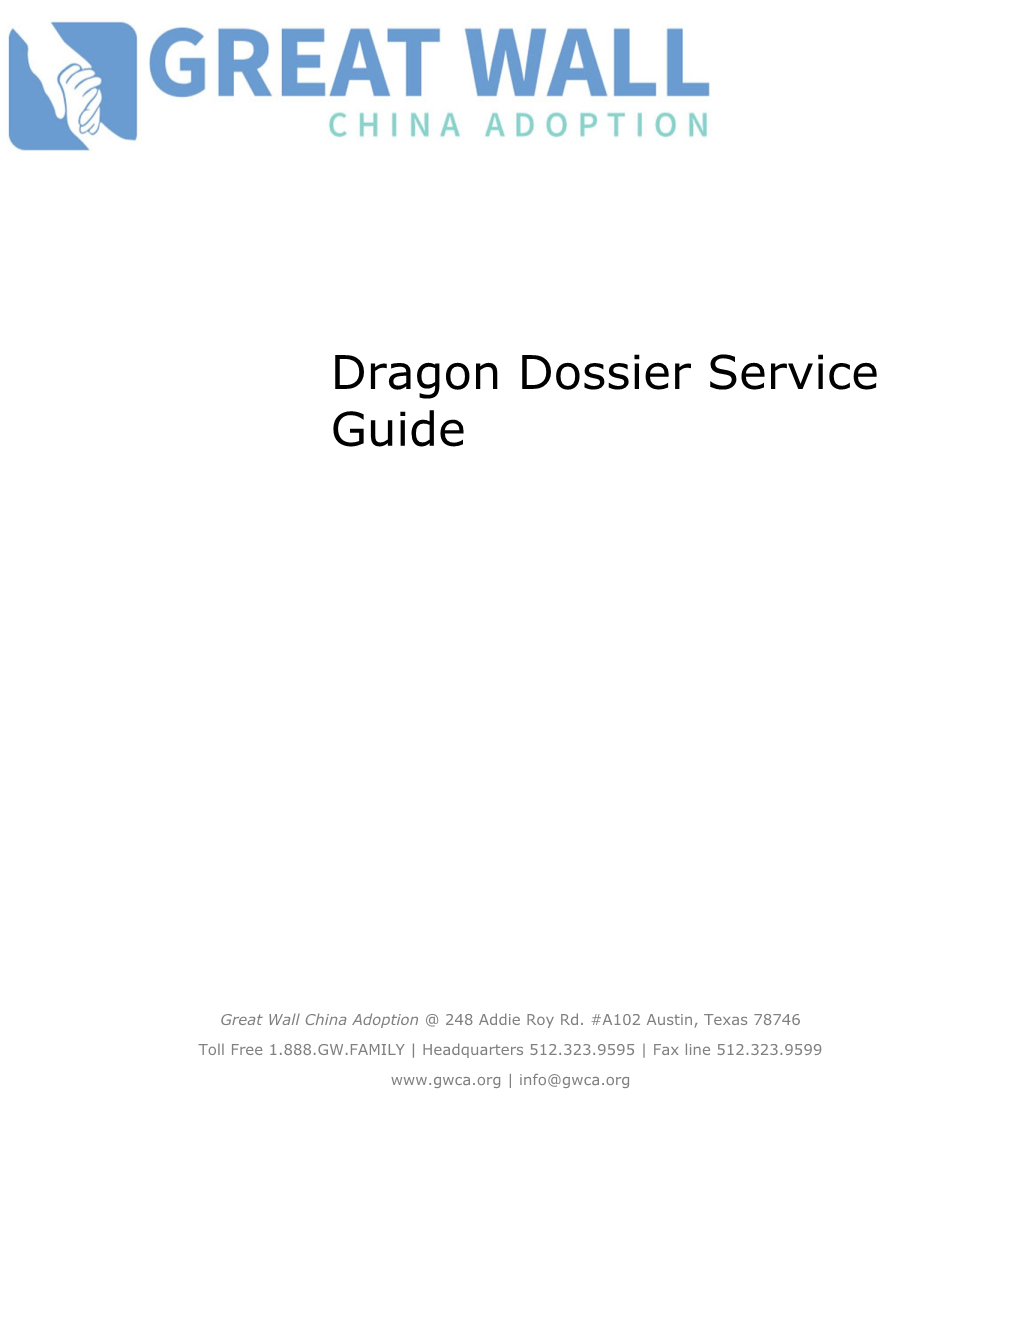 Dragon Dossier Service Guide